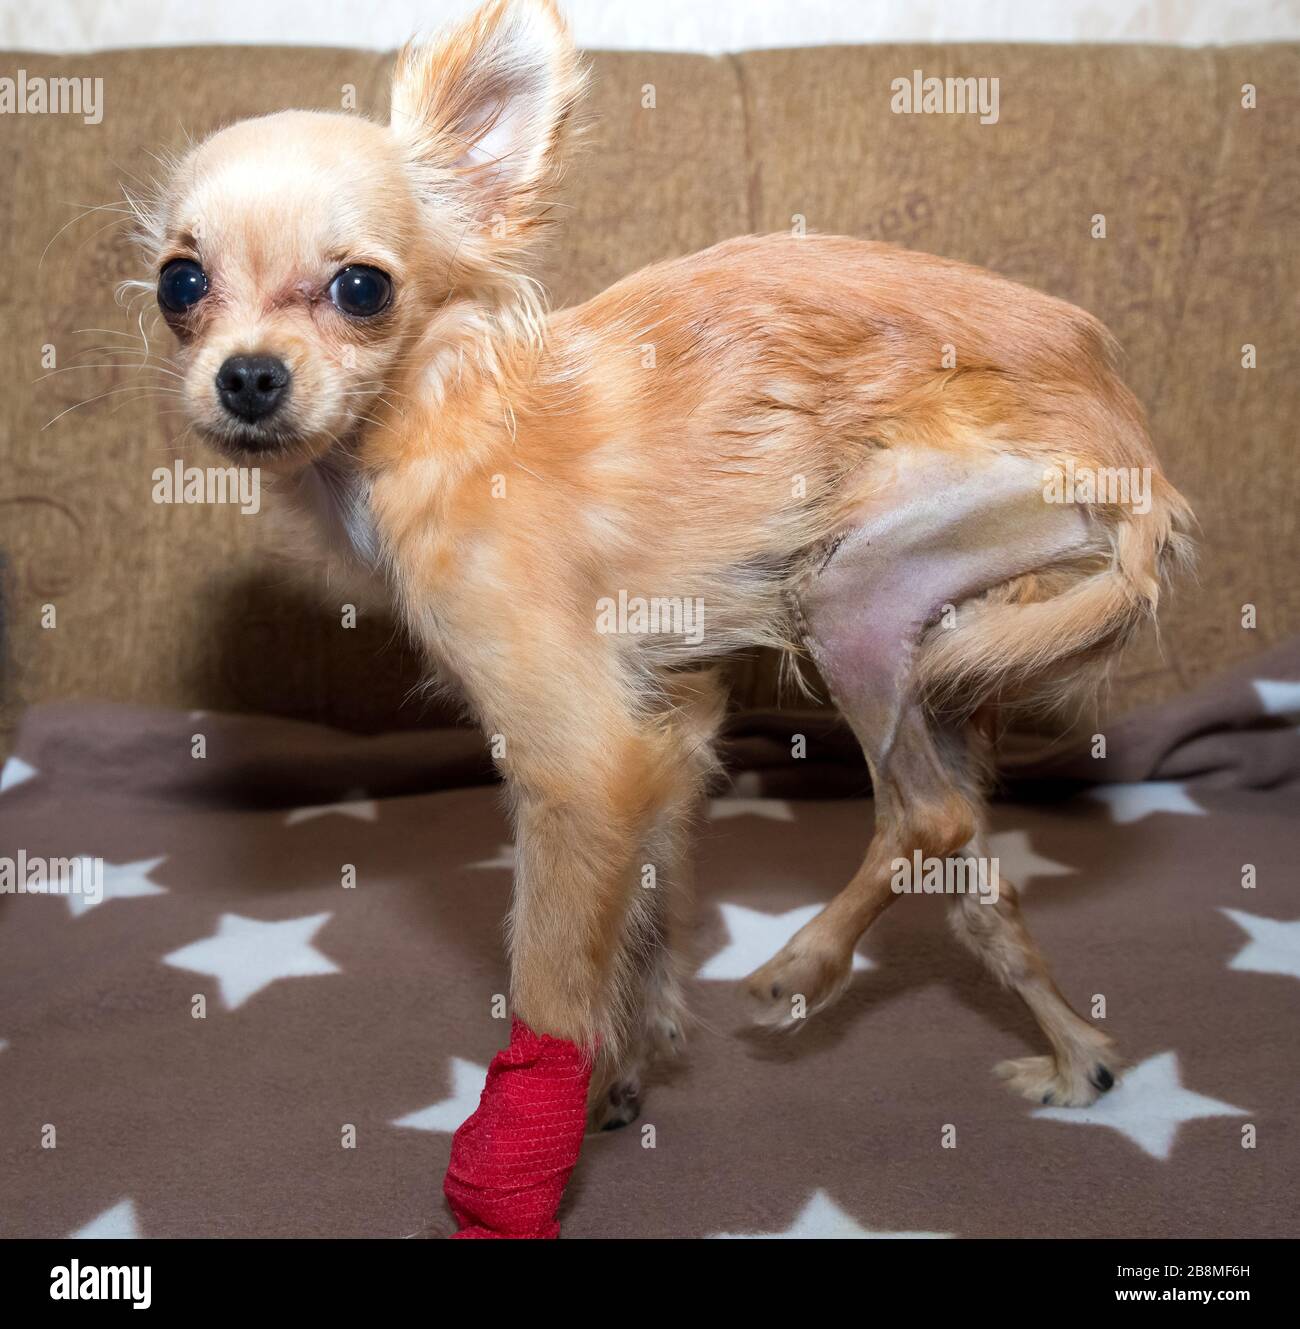 Patellar-Luxus bei Hund. Chirurgische Korrektur Stockfotografie - Alamy